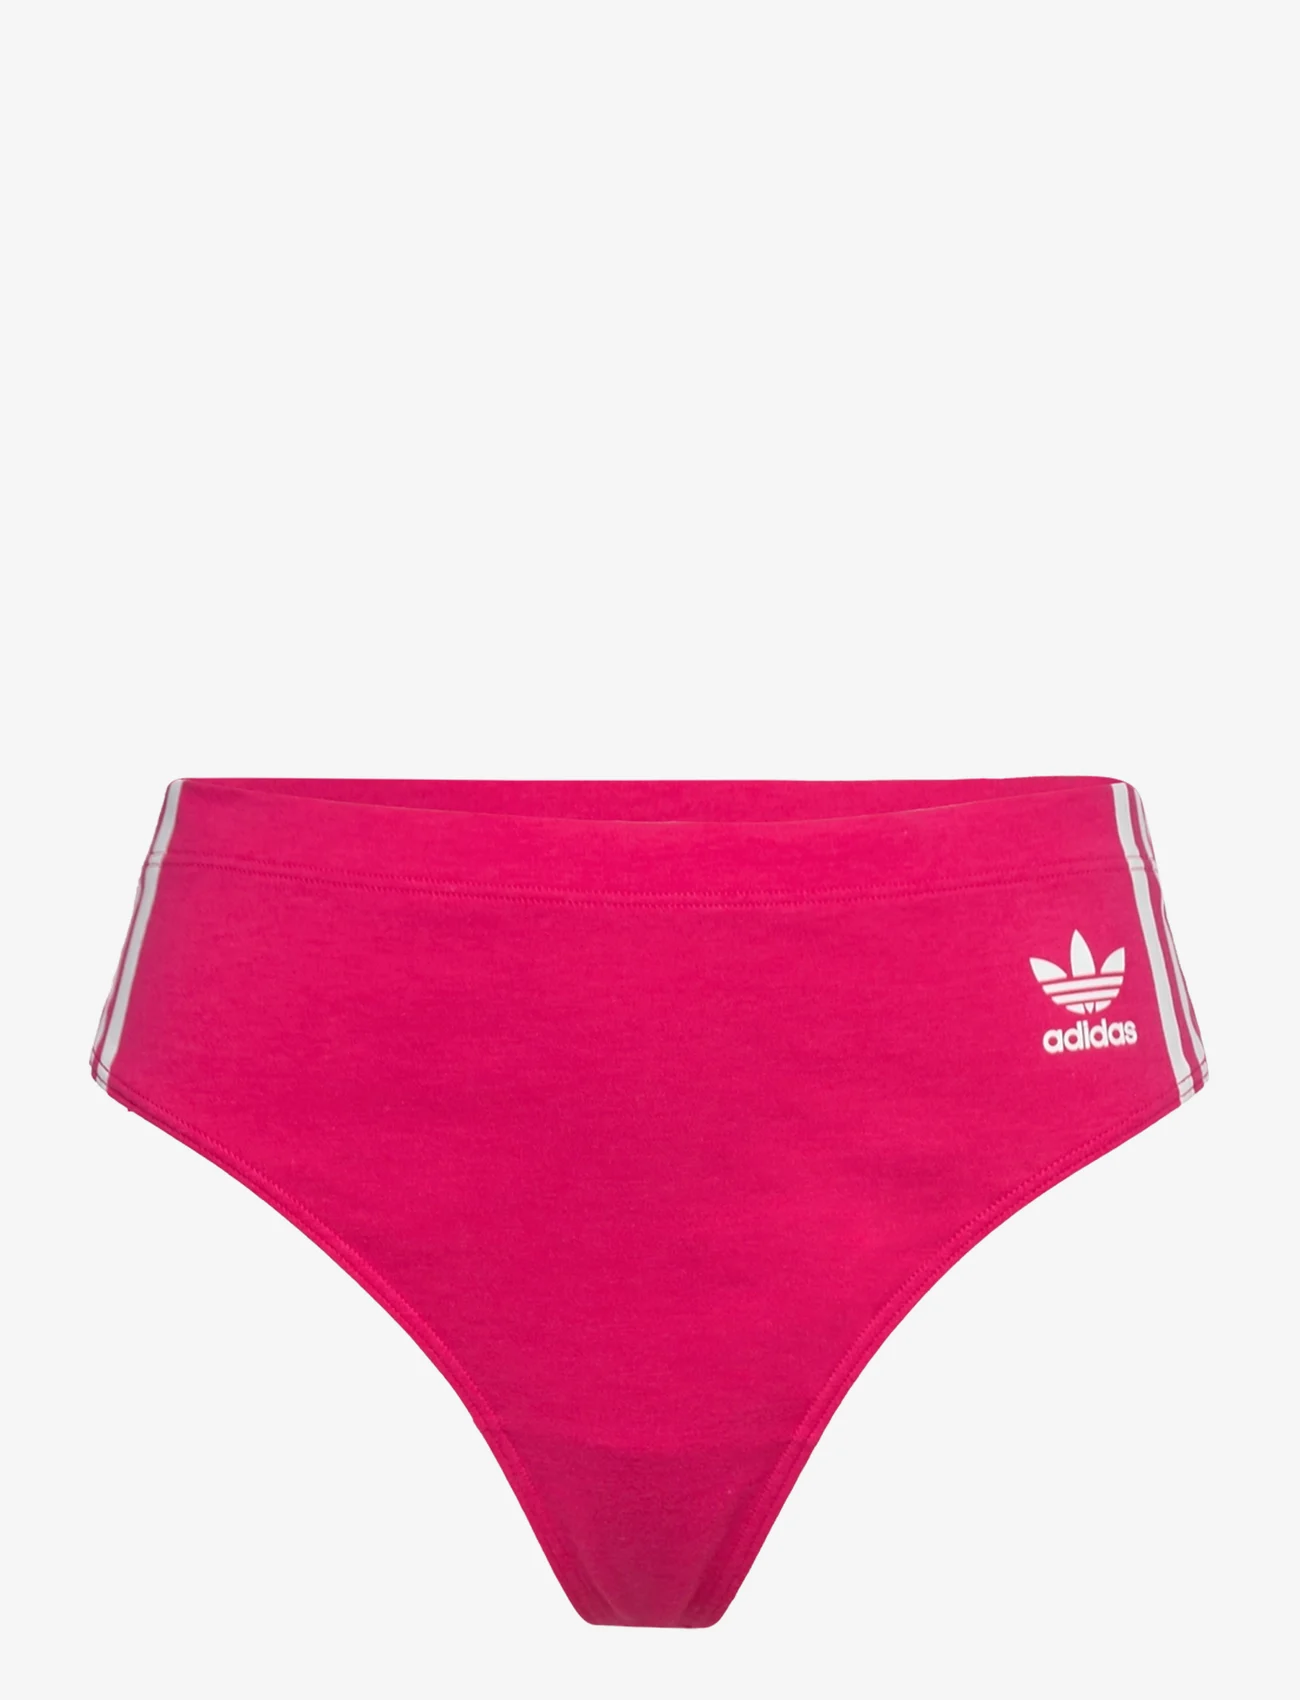 adidas Originals Underwear - Thong - die niedrigsten preise - aubergine - 0